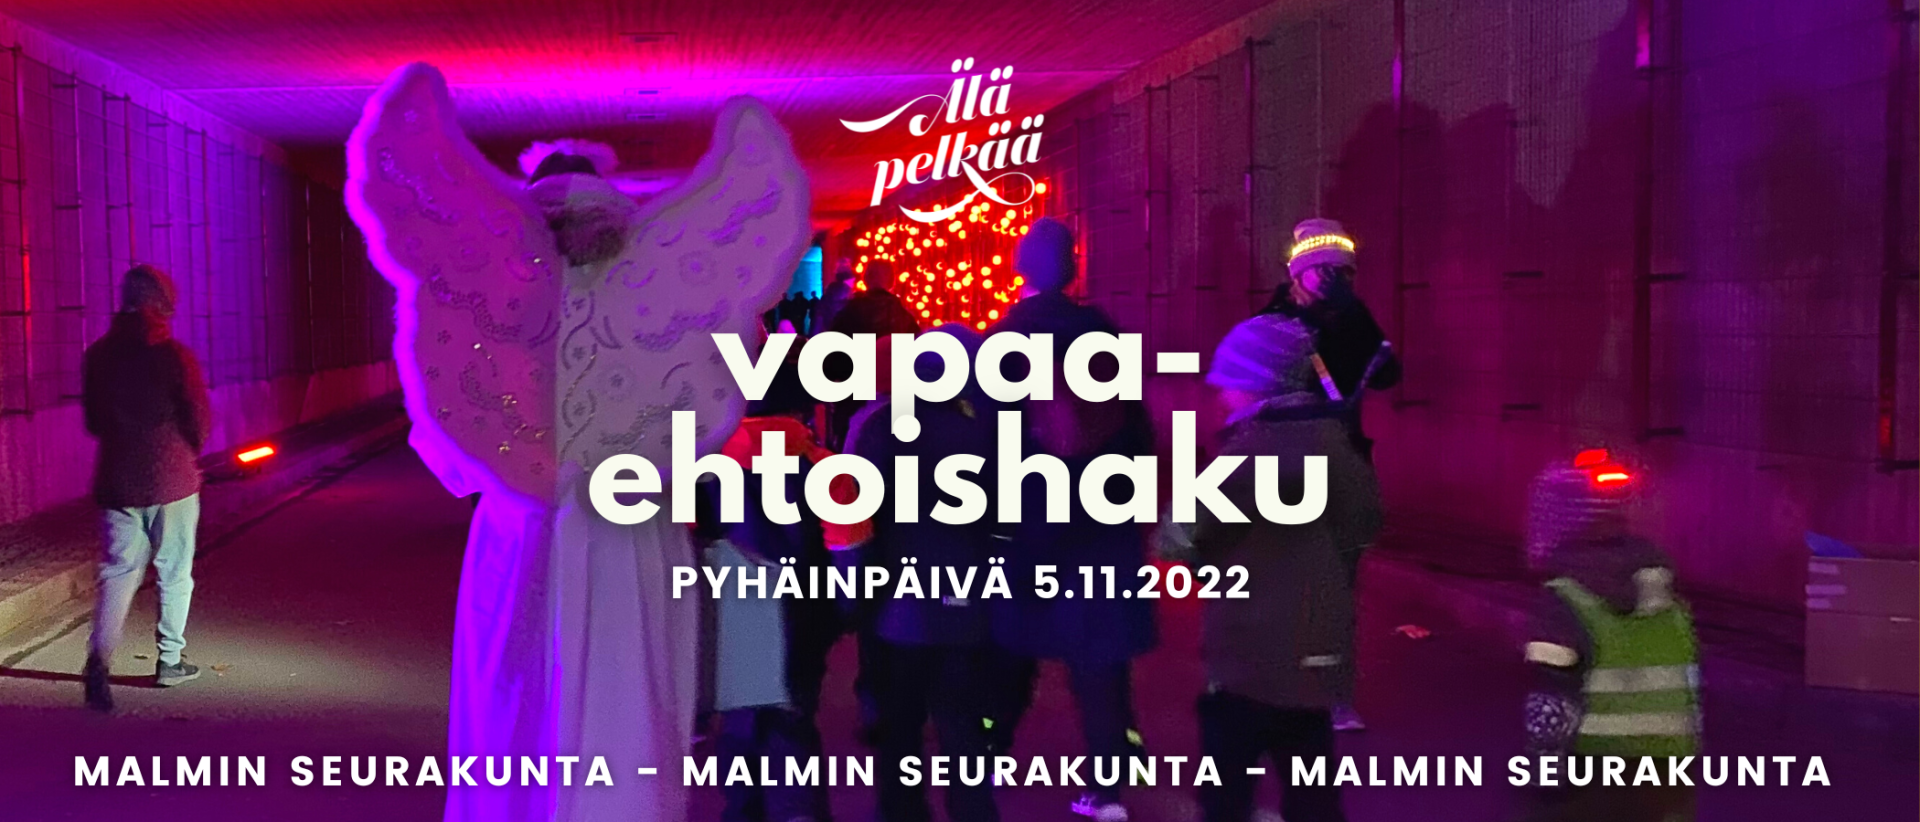 Enkeli ja ihmisiä valotunnelissa, teksti: Vapaaehtoishaku pyhäinpäivä 5.11.2022 Malmin seurakunta